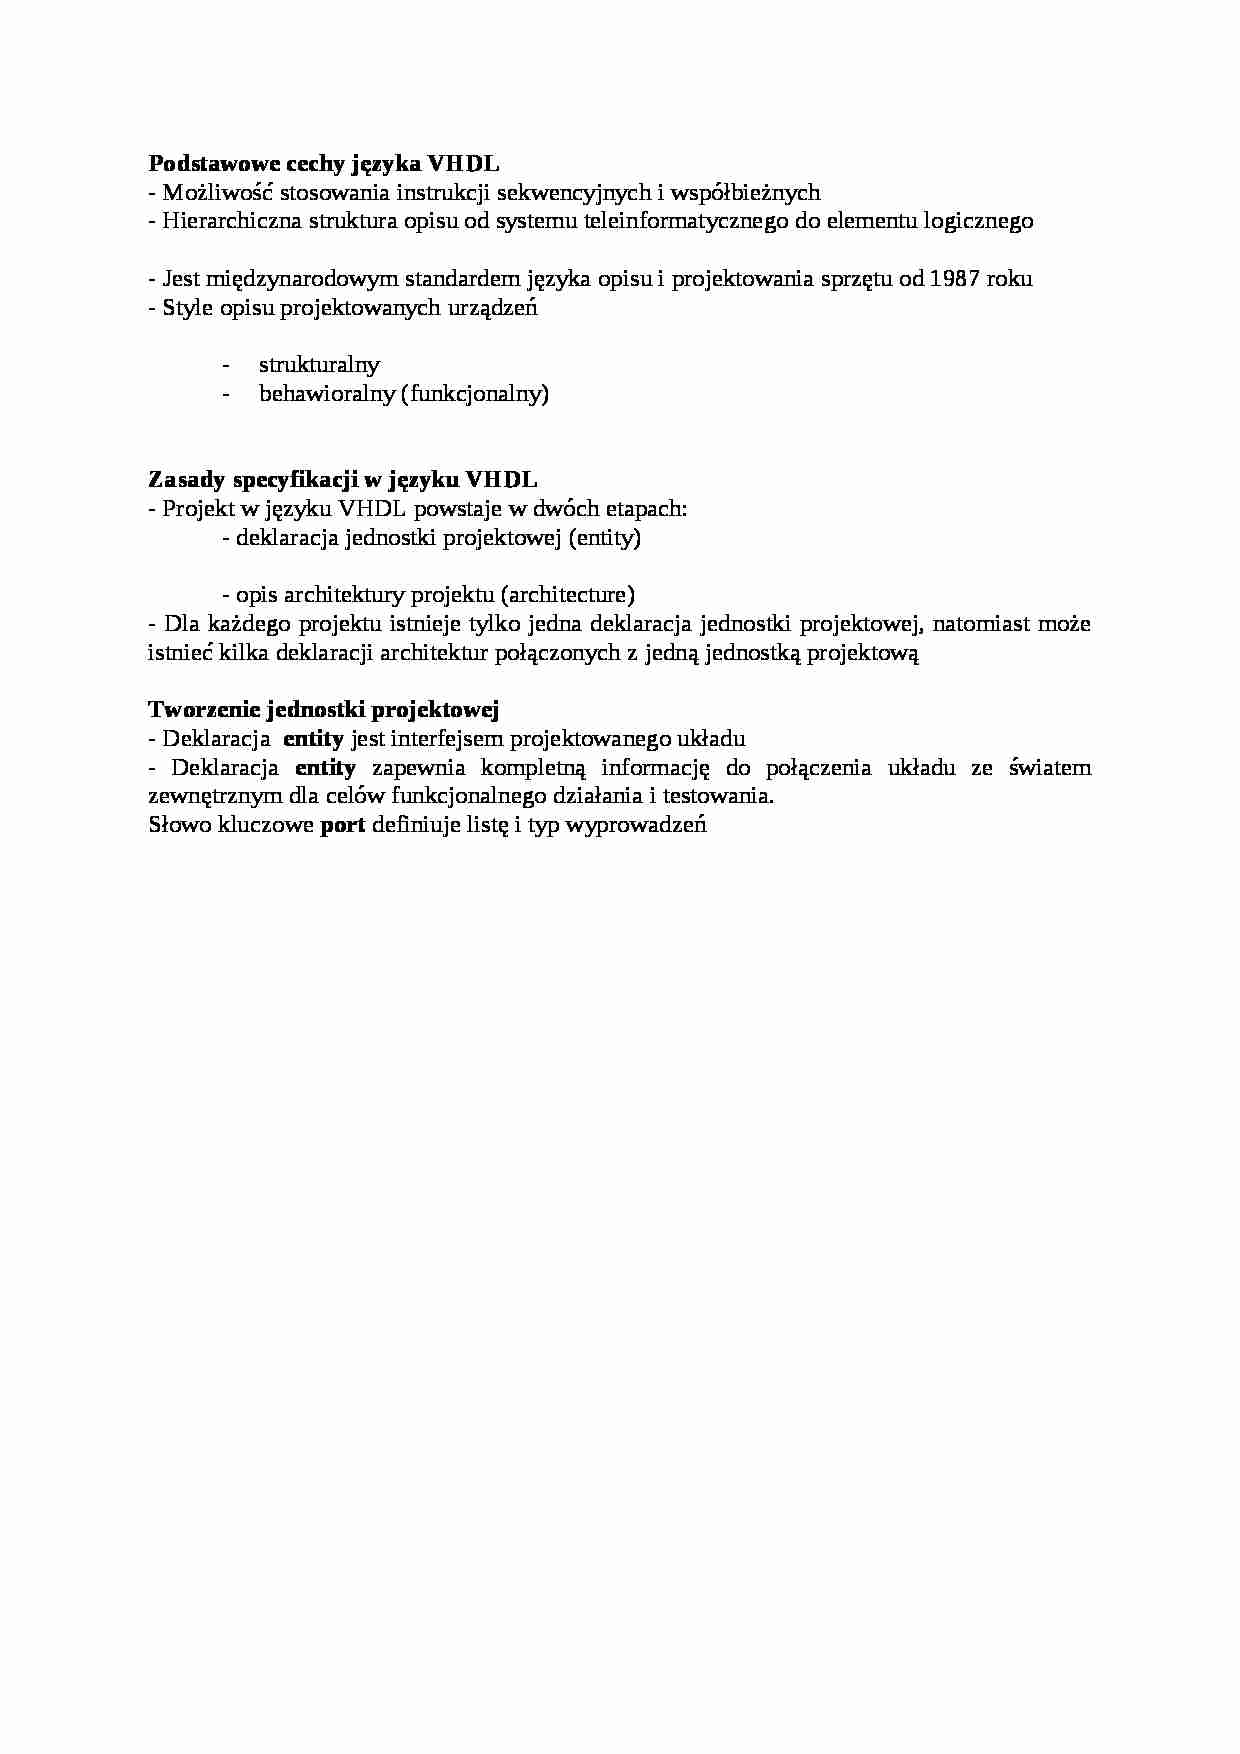 Podstawowe cechy VHDL - wykład - strona 1